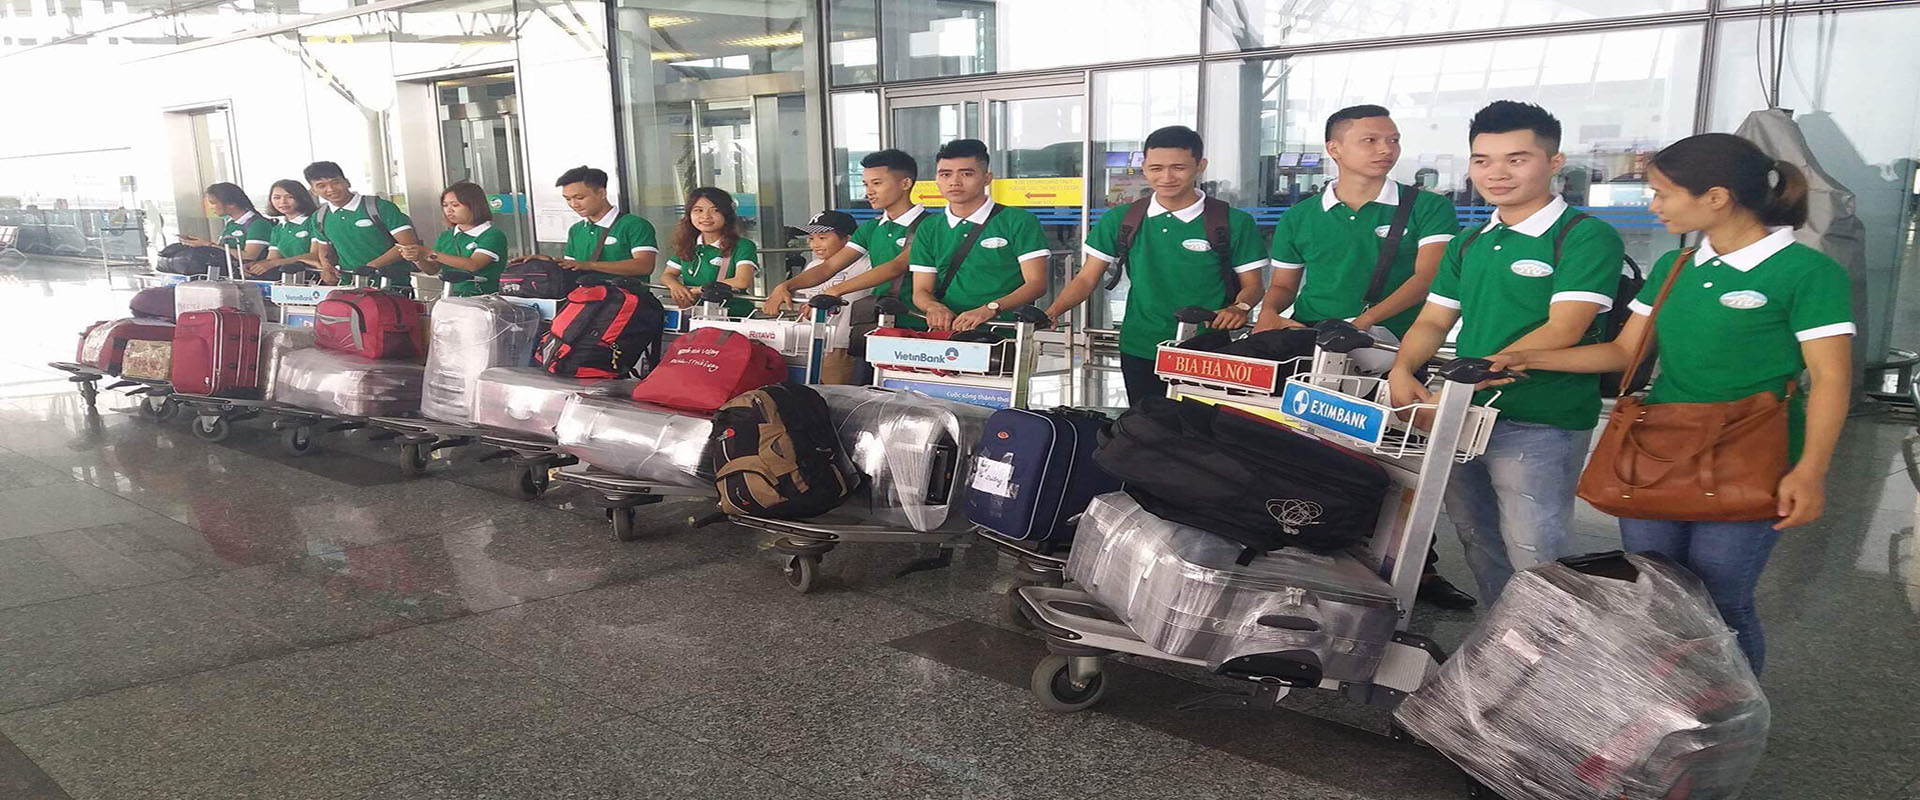 Chuẩn bị xuất cảnh tại sân bay Nội Bài